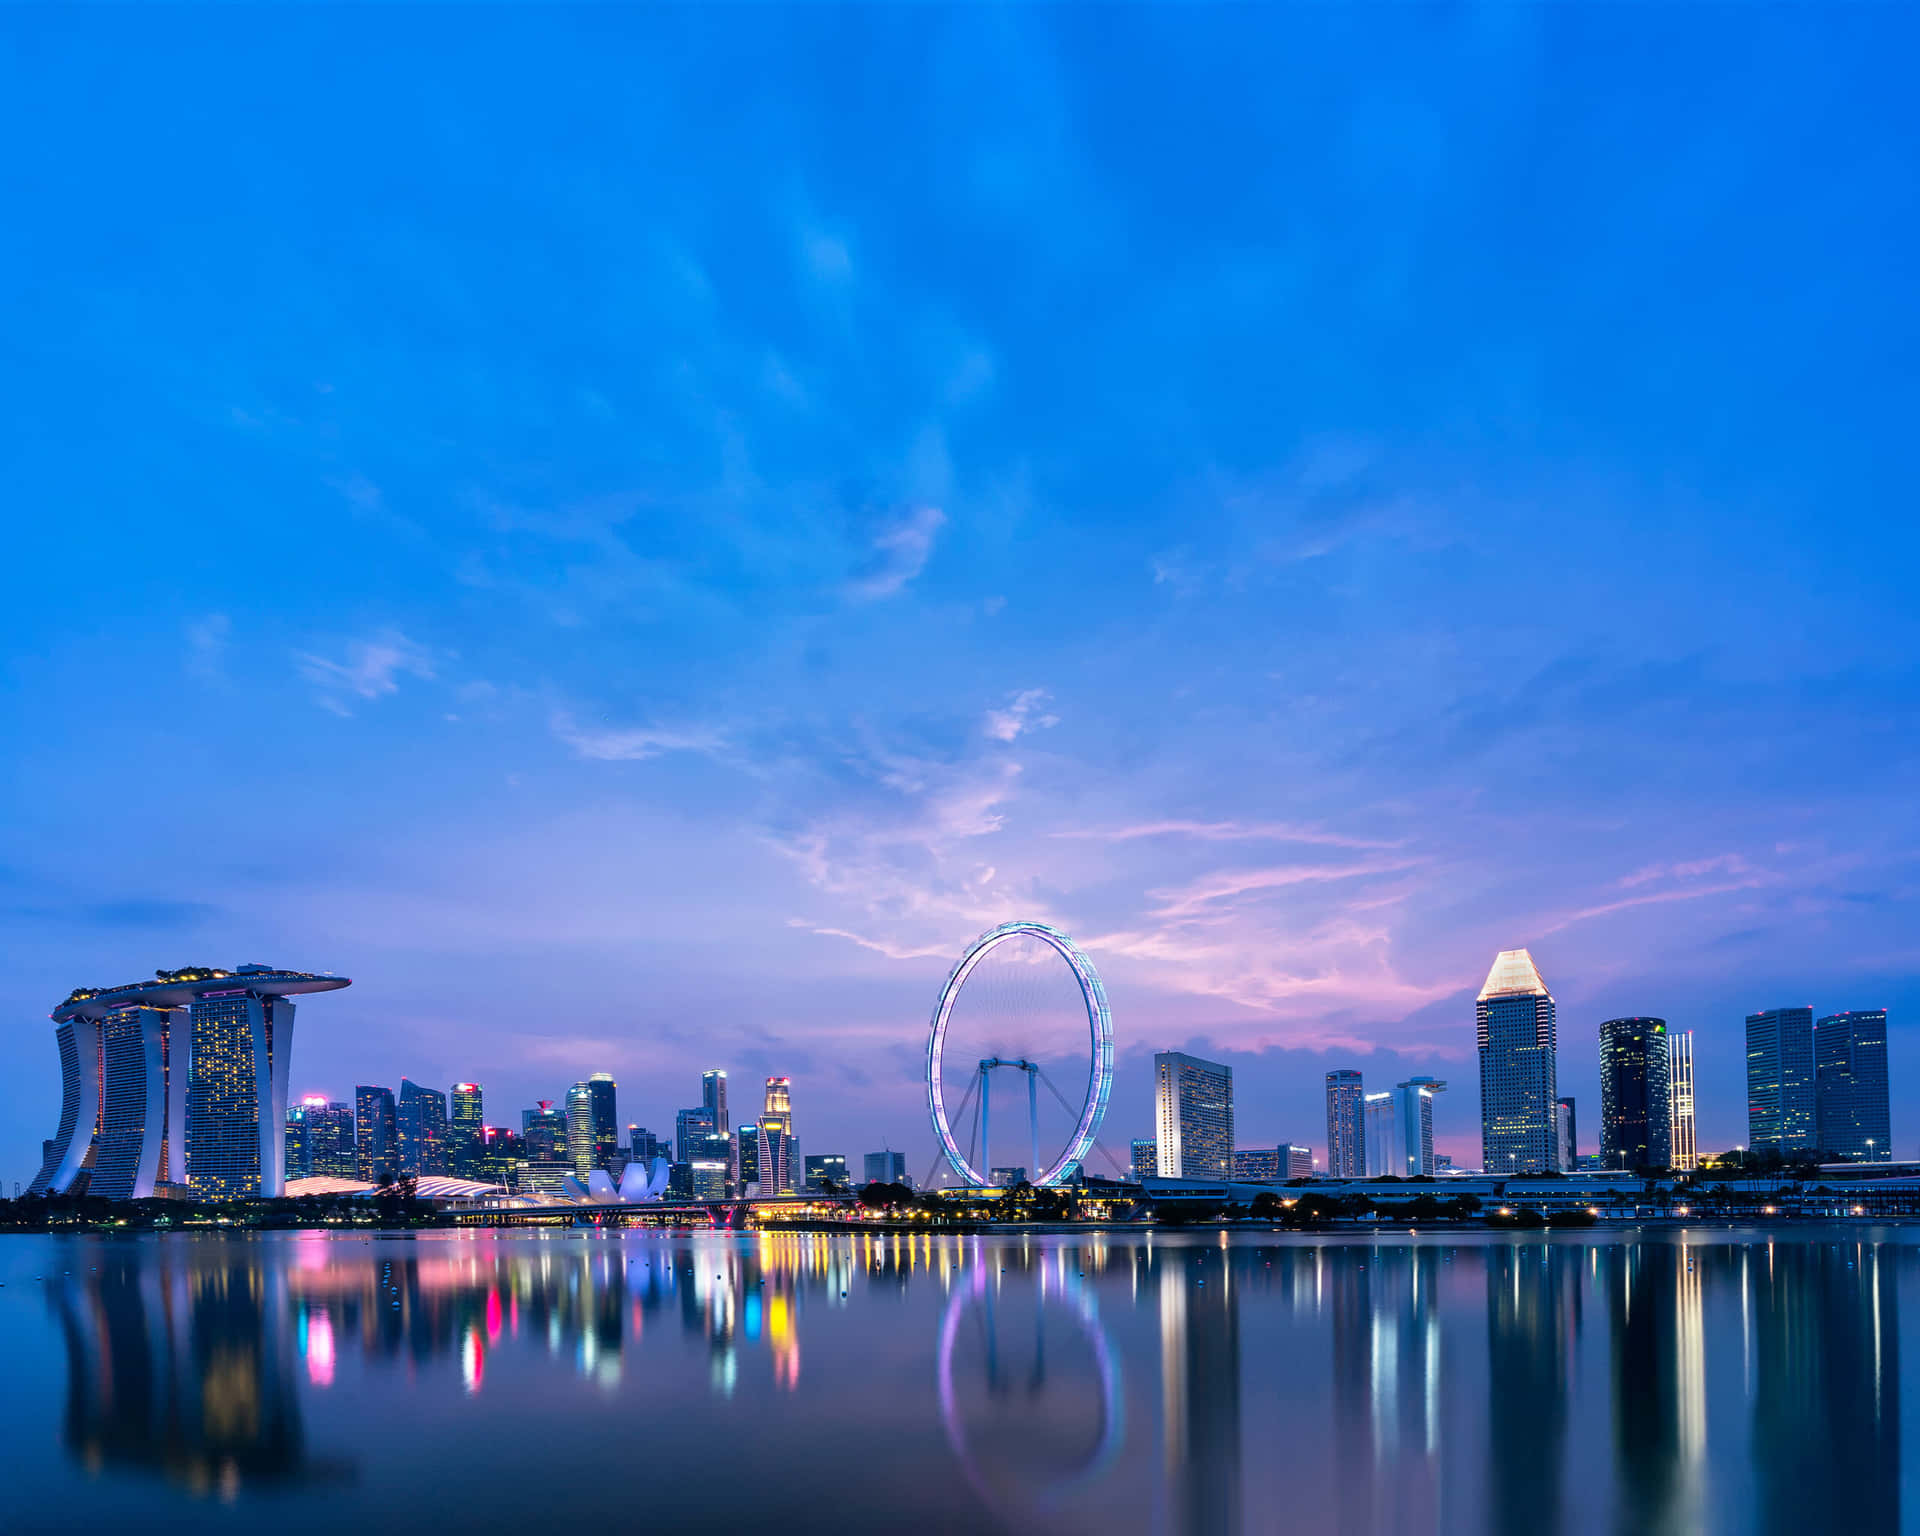 Singaporeè Una Città Vibrante E Frenetica, Sede Di Edifici E Attrazioni Iconiche.